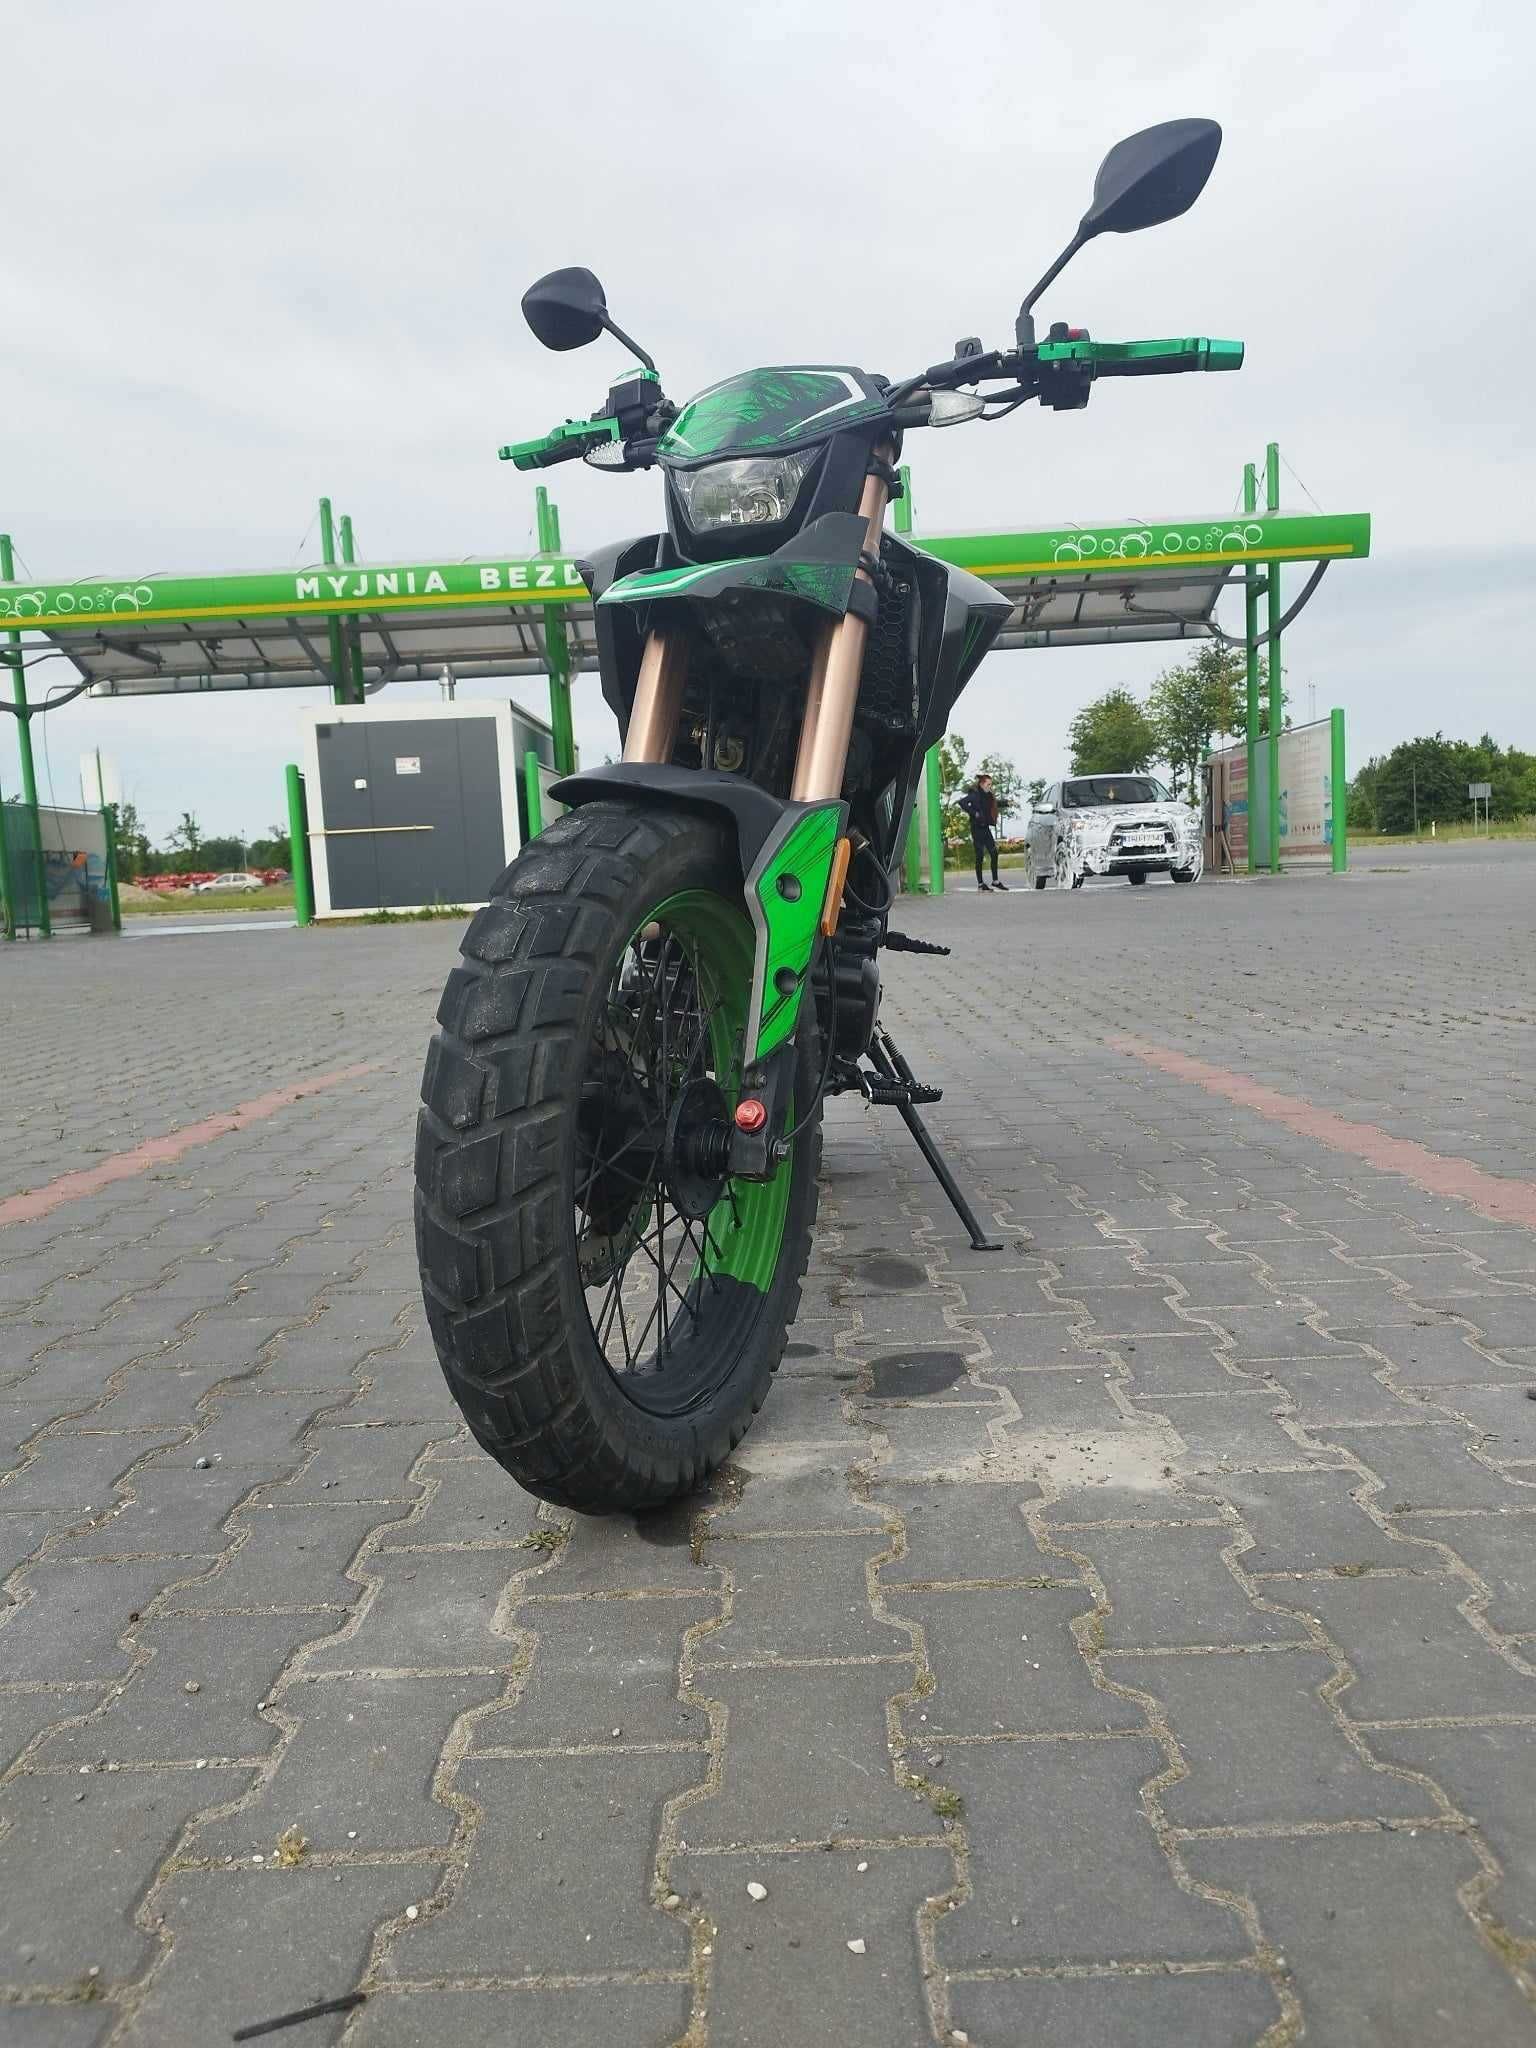 Motocykl Zipp VZ-5